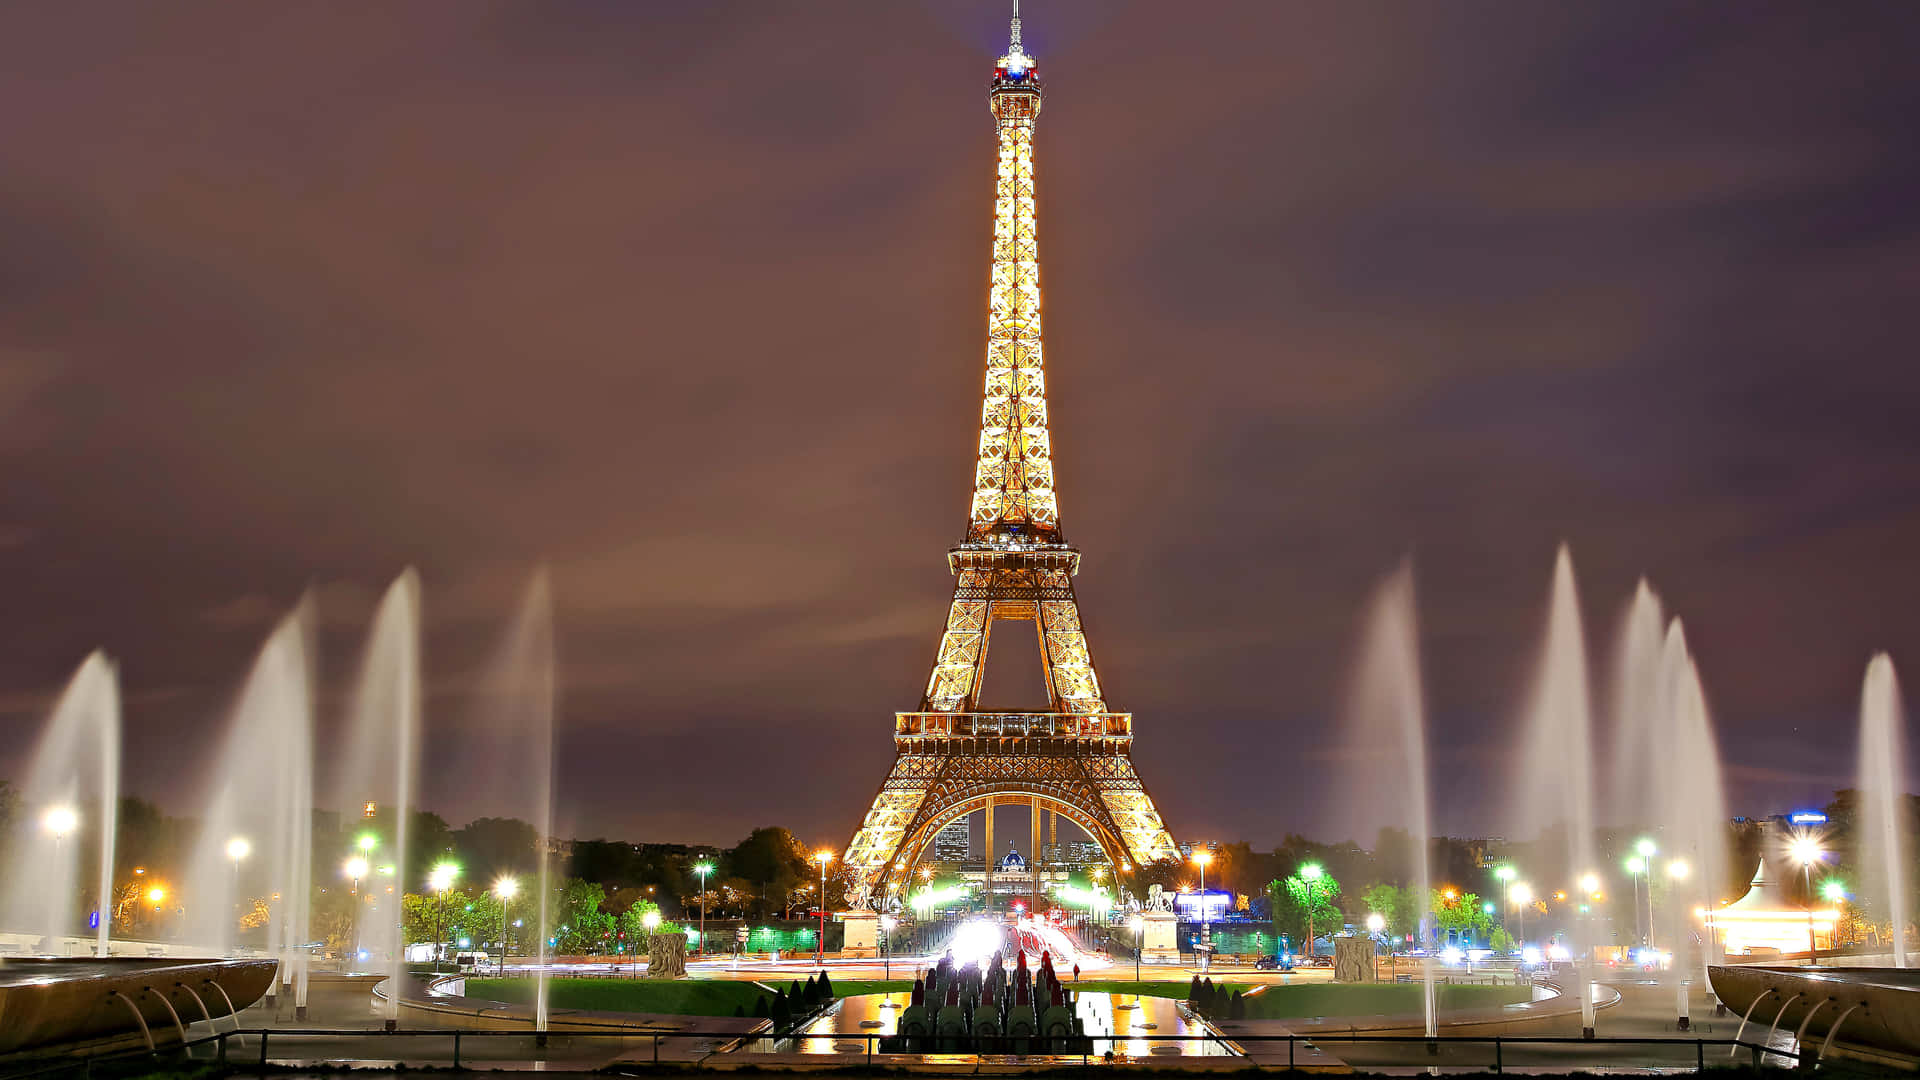 Den store Eiffeltårn belyser Paris nattesky. Wallpaper